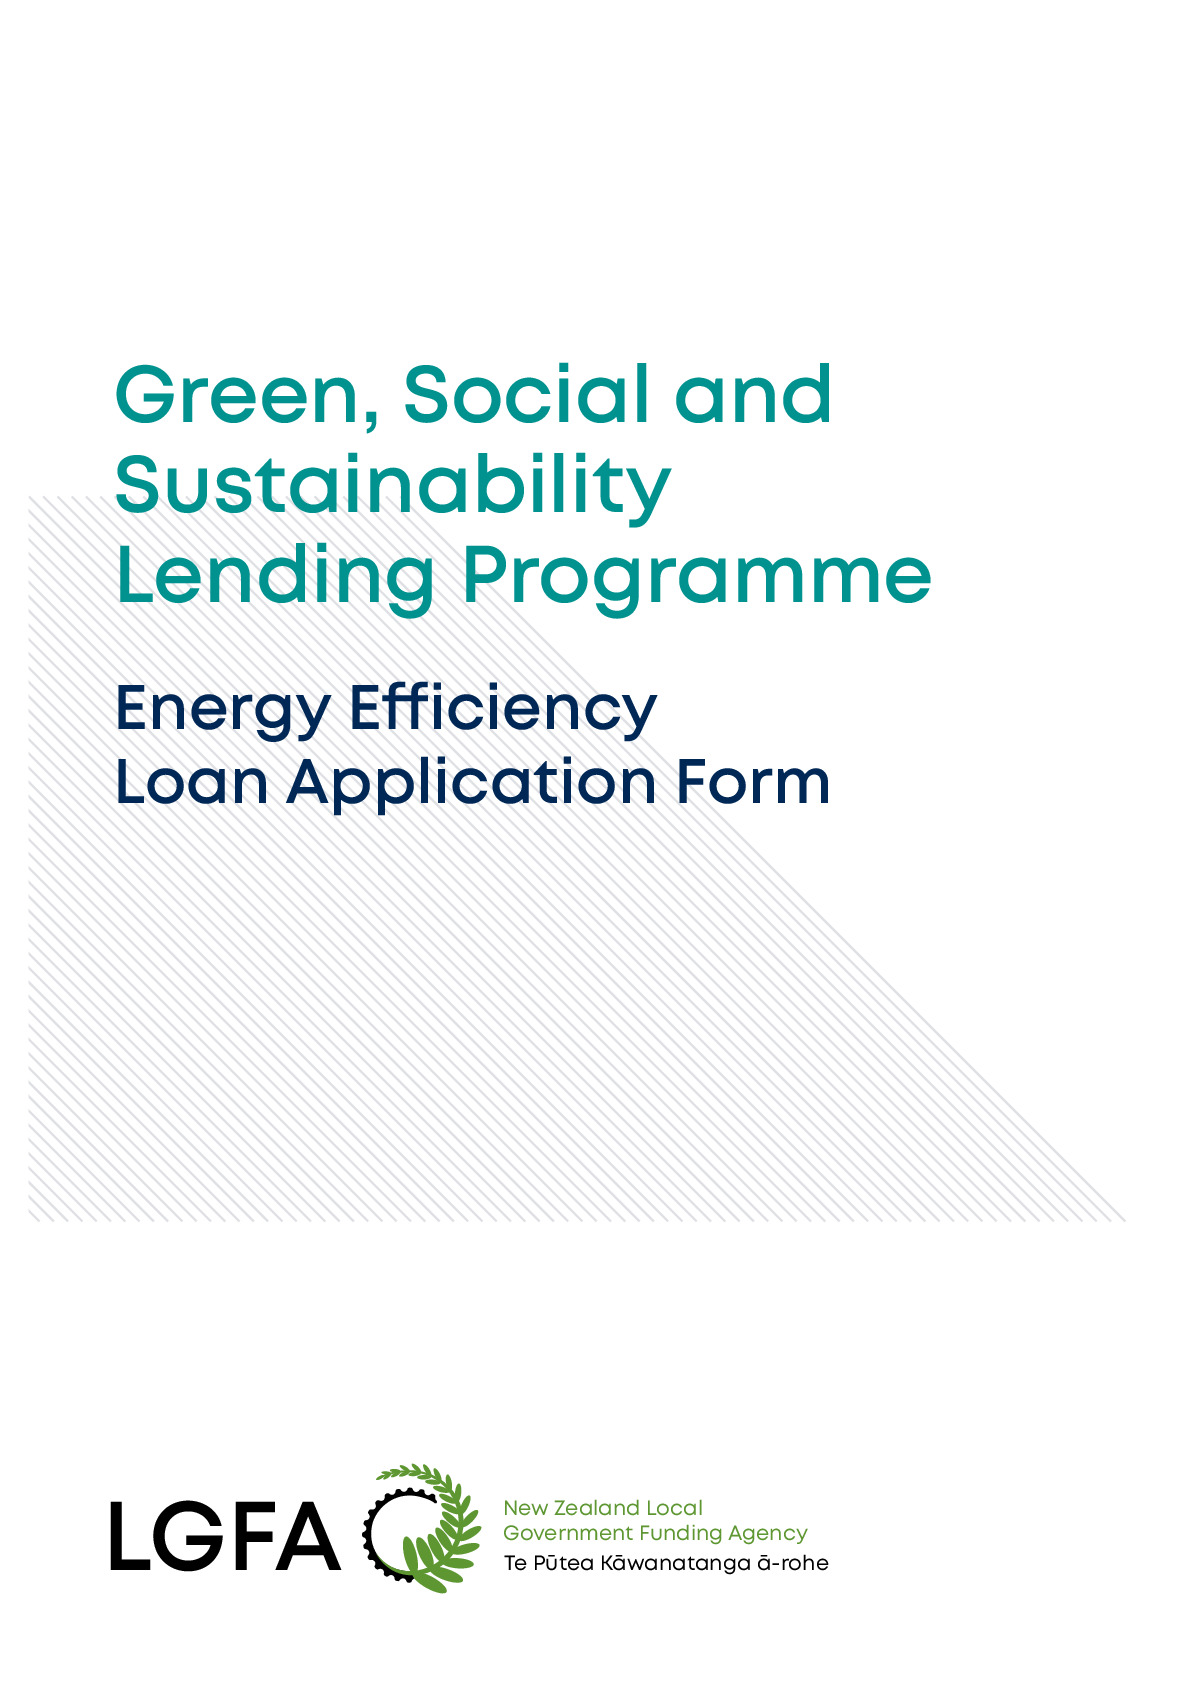 Energy Efficiency Loan Application Form 30092021 FINAL